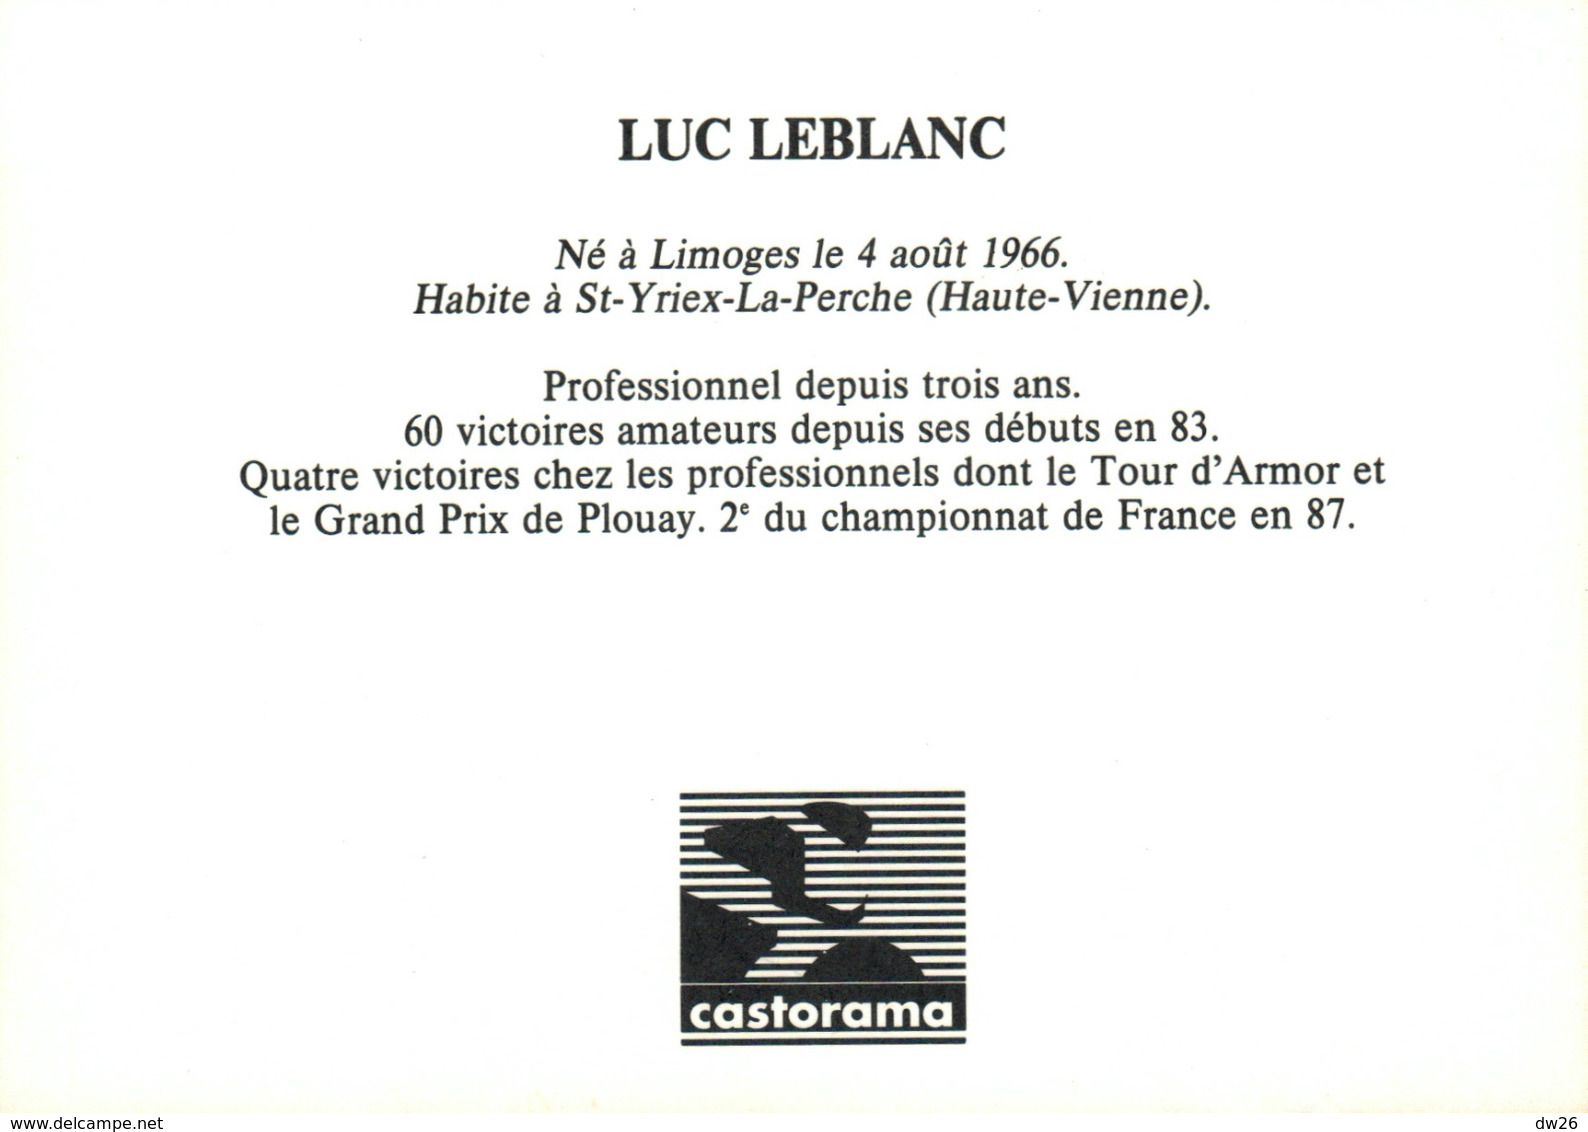 Cyclisme - Luc Leblanc, Cycliste Professionnel, Equipe Castorama (avec Palmarès) - Sport